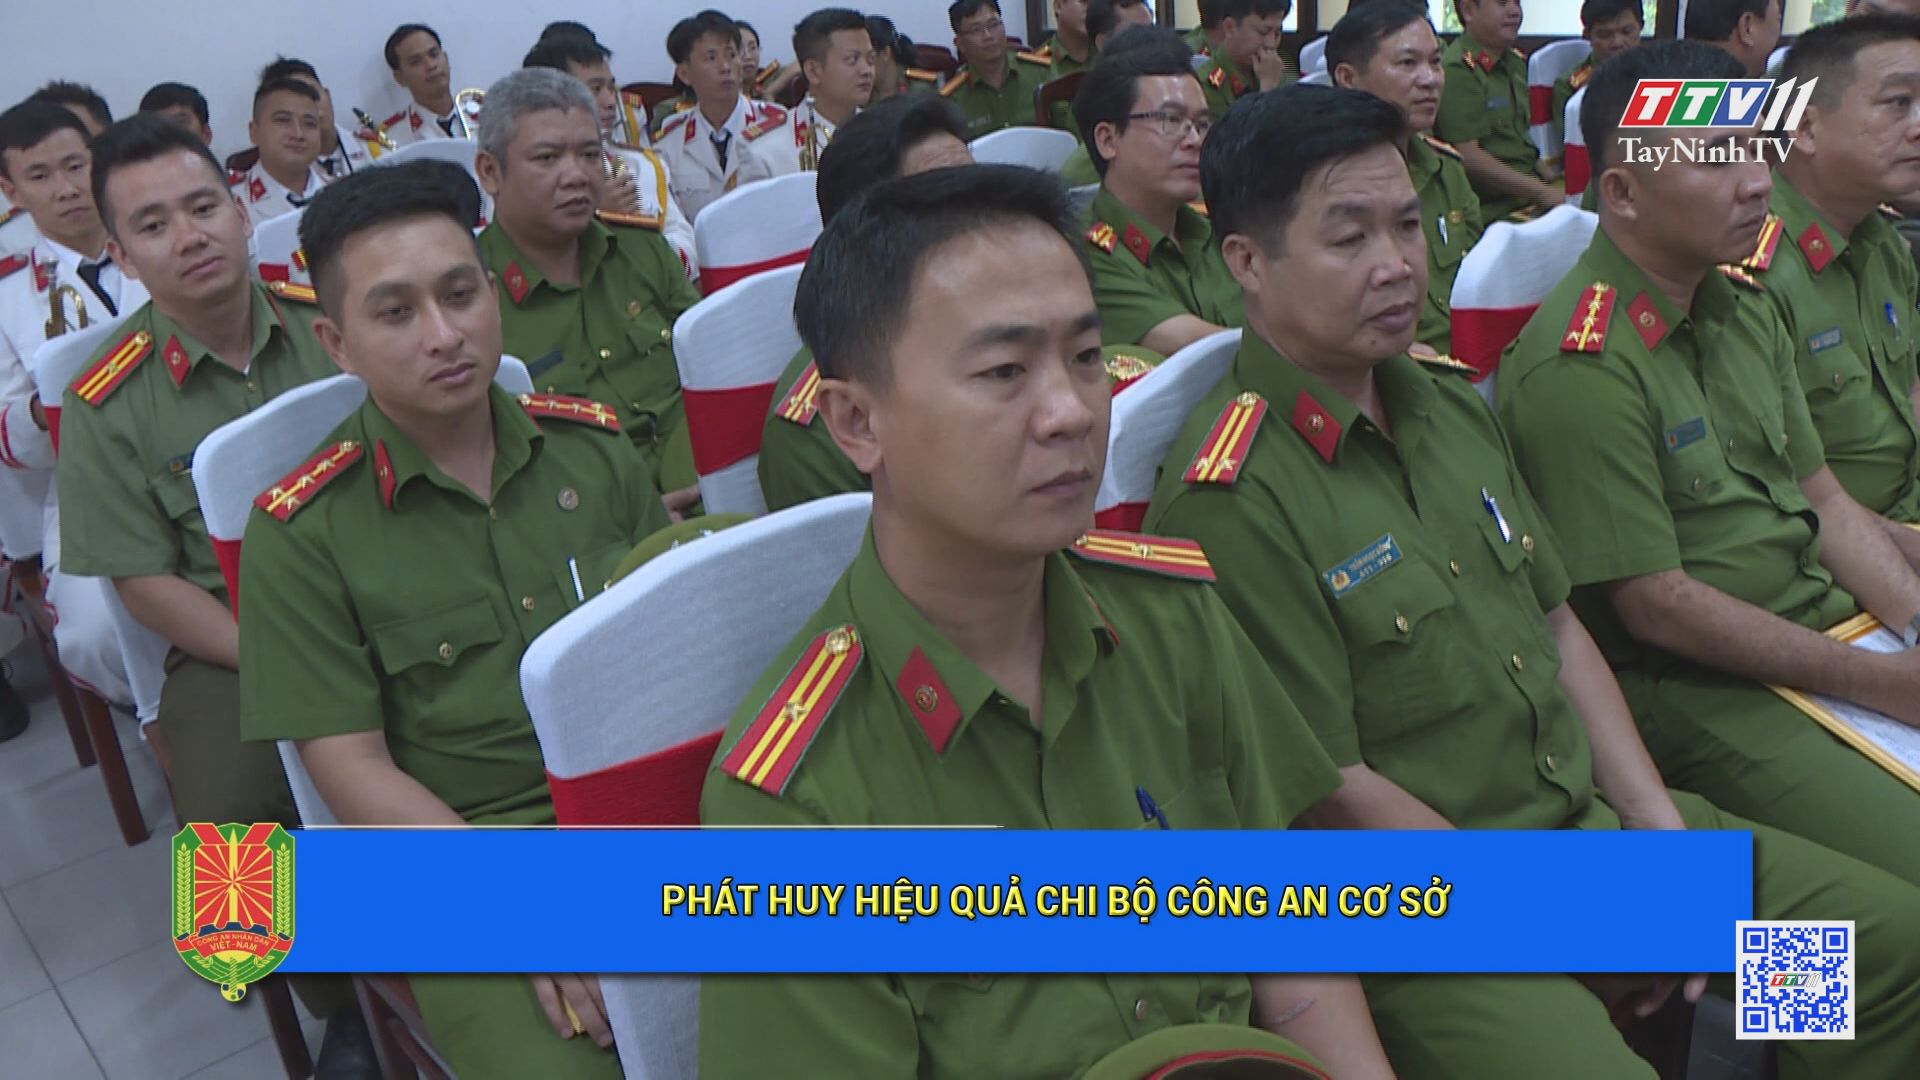 Phát huy hiệu quả chi bộ Công an cơ sở | An ninh Tây Ninh | TayNinhTV